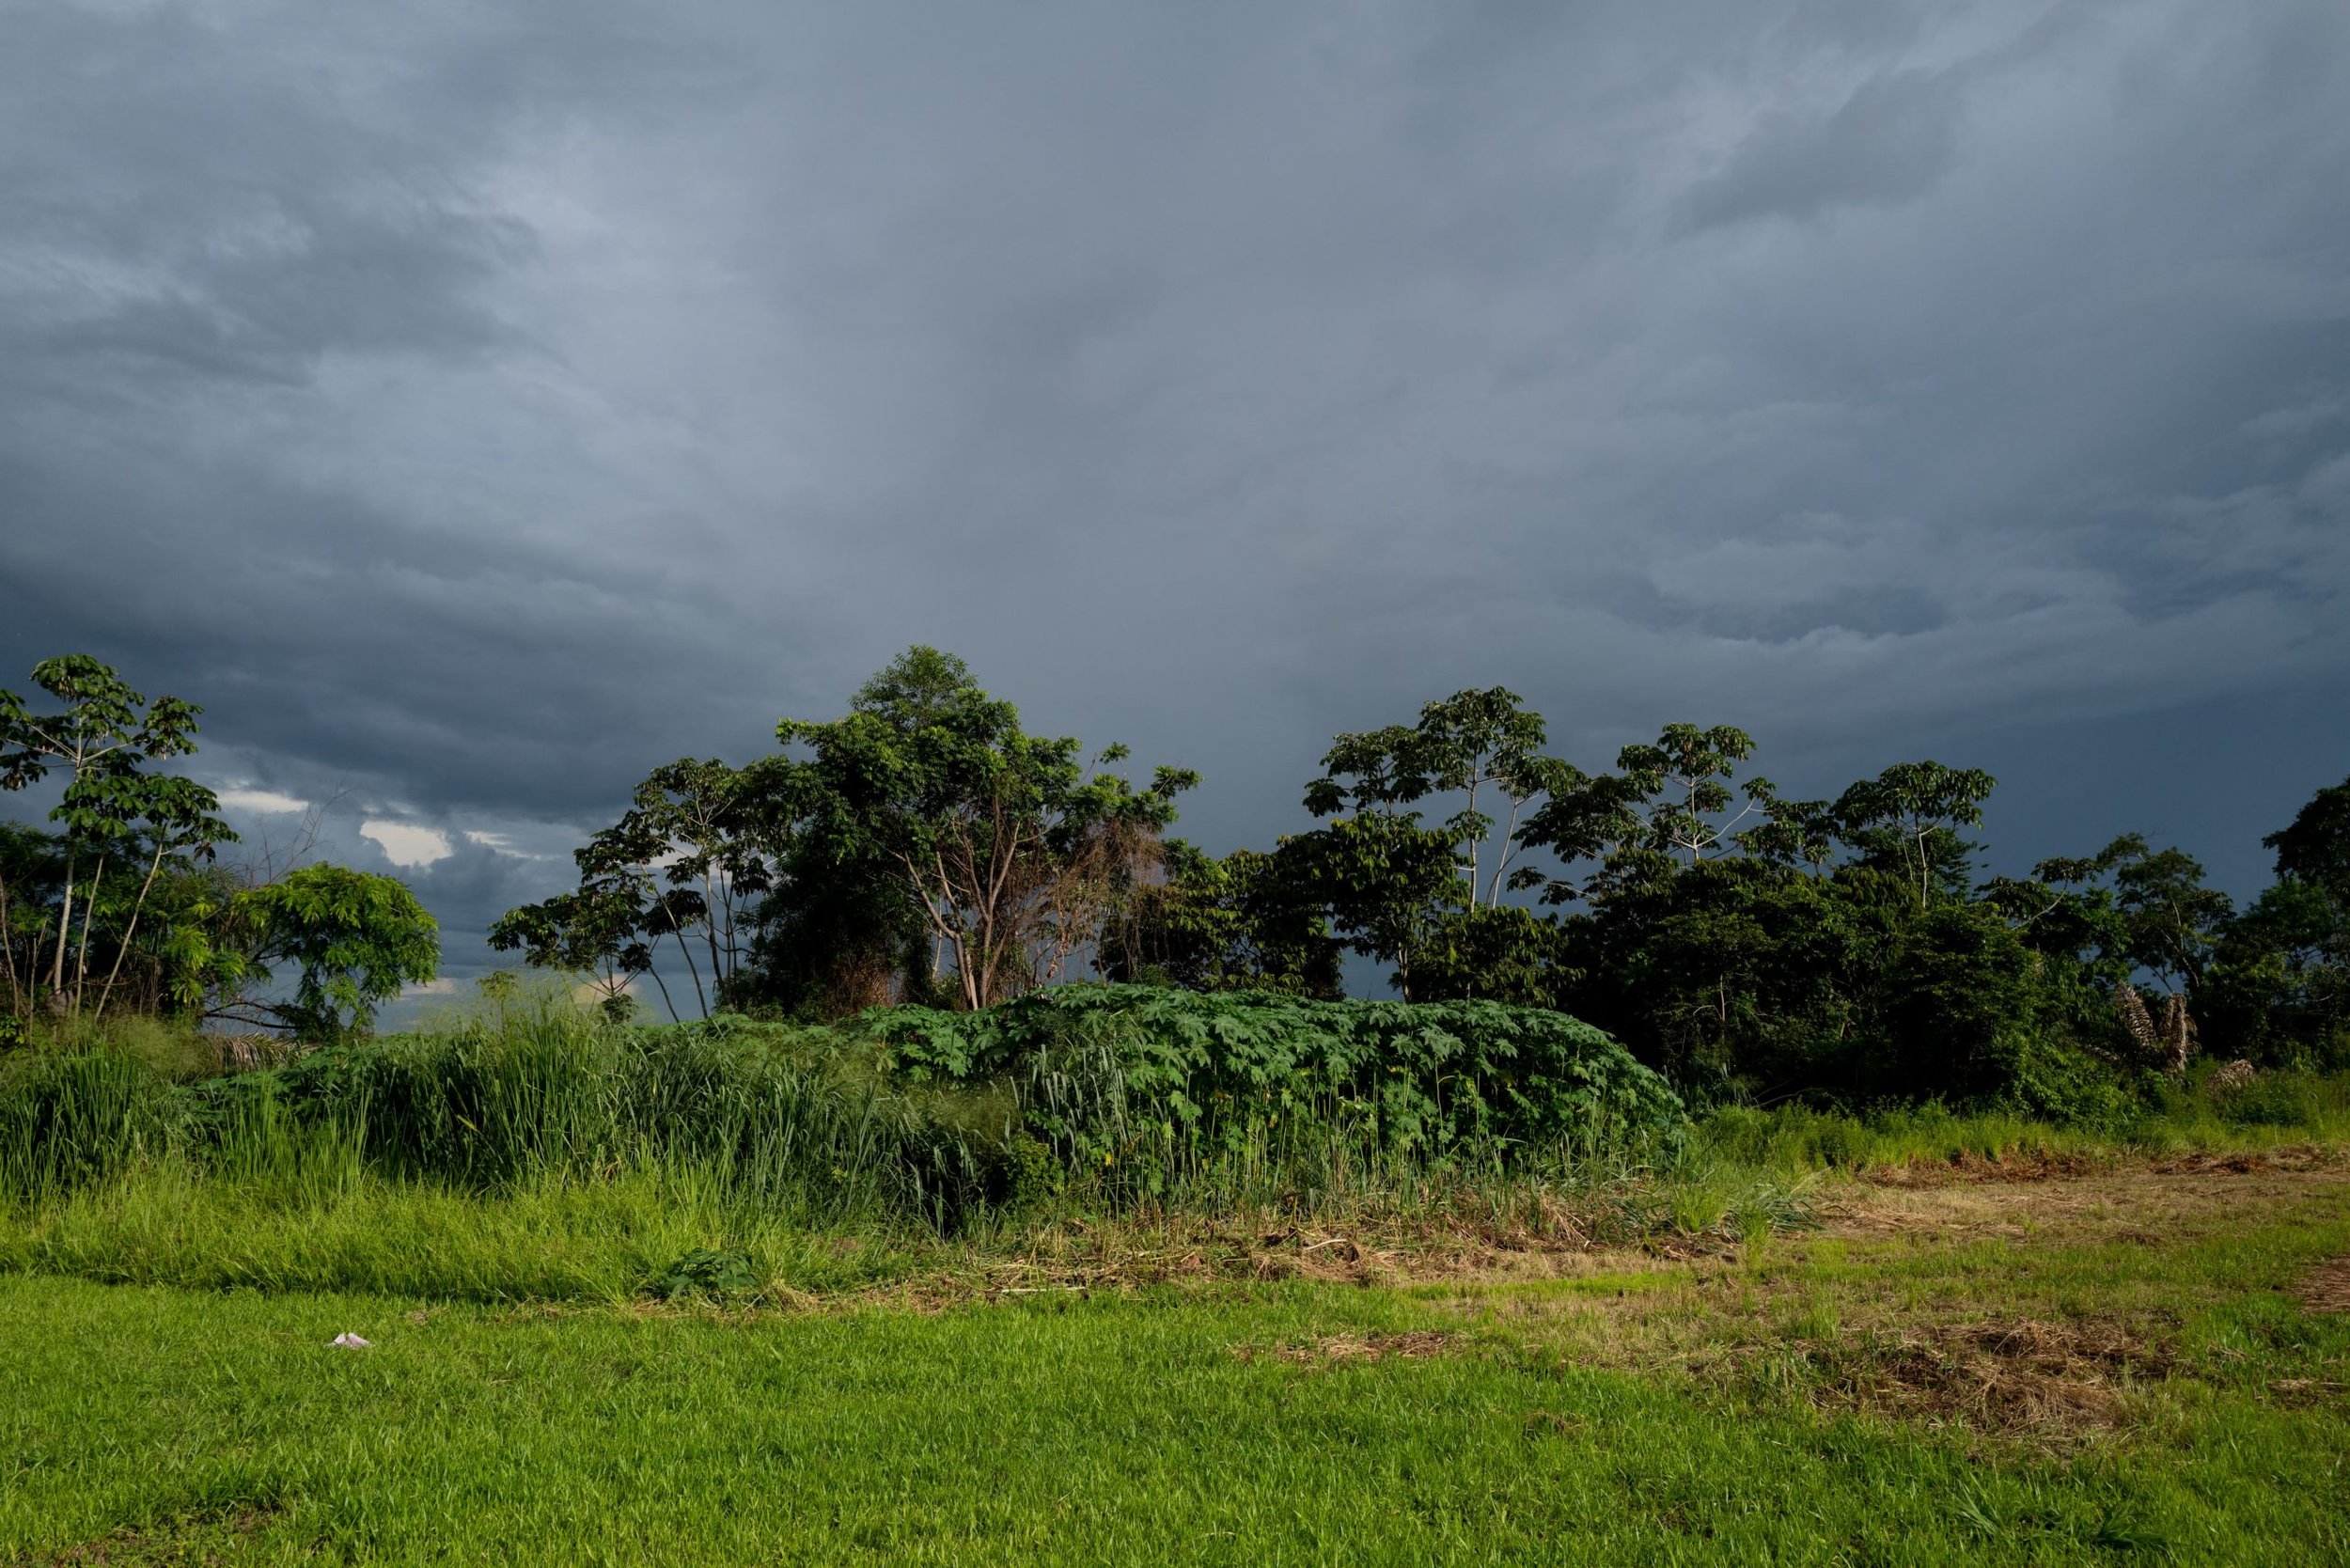  Det är regnsäsong i Xingu. Mörka moln närmar sig Metuktiresamhället. Foto: Alice Aedy 